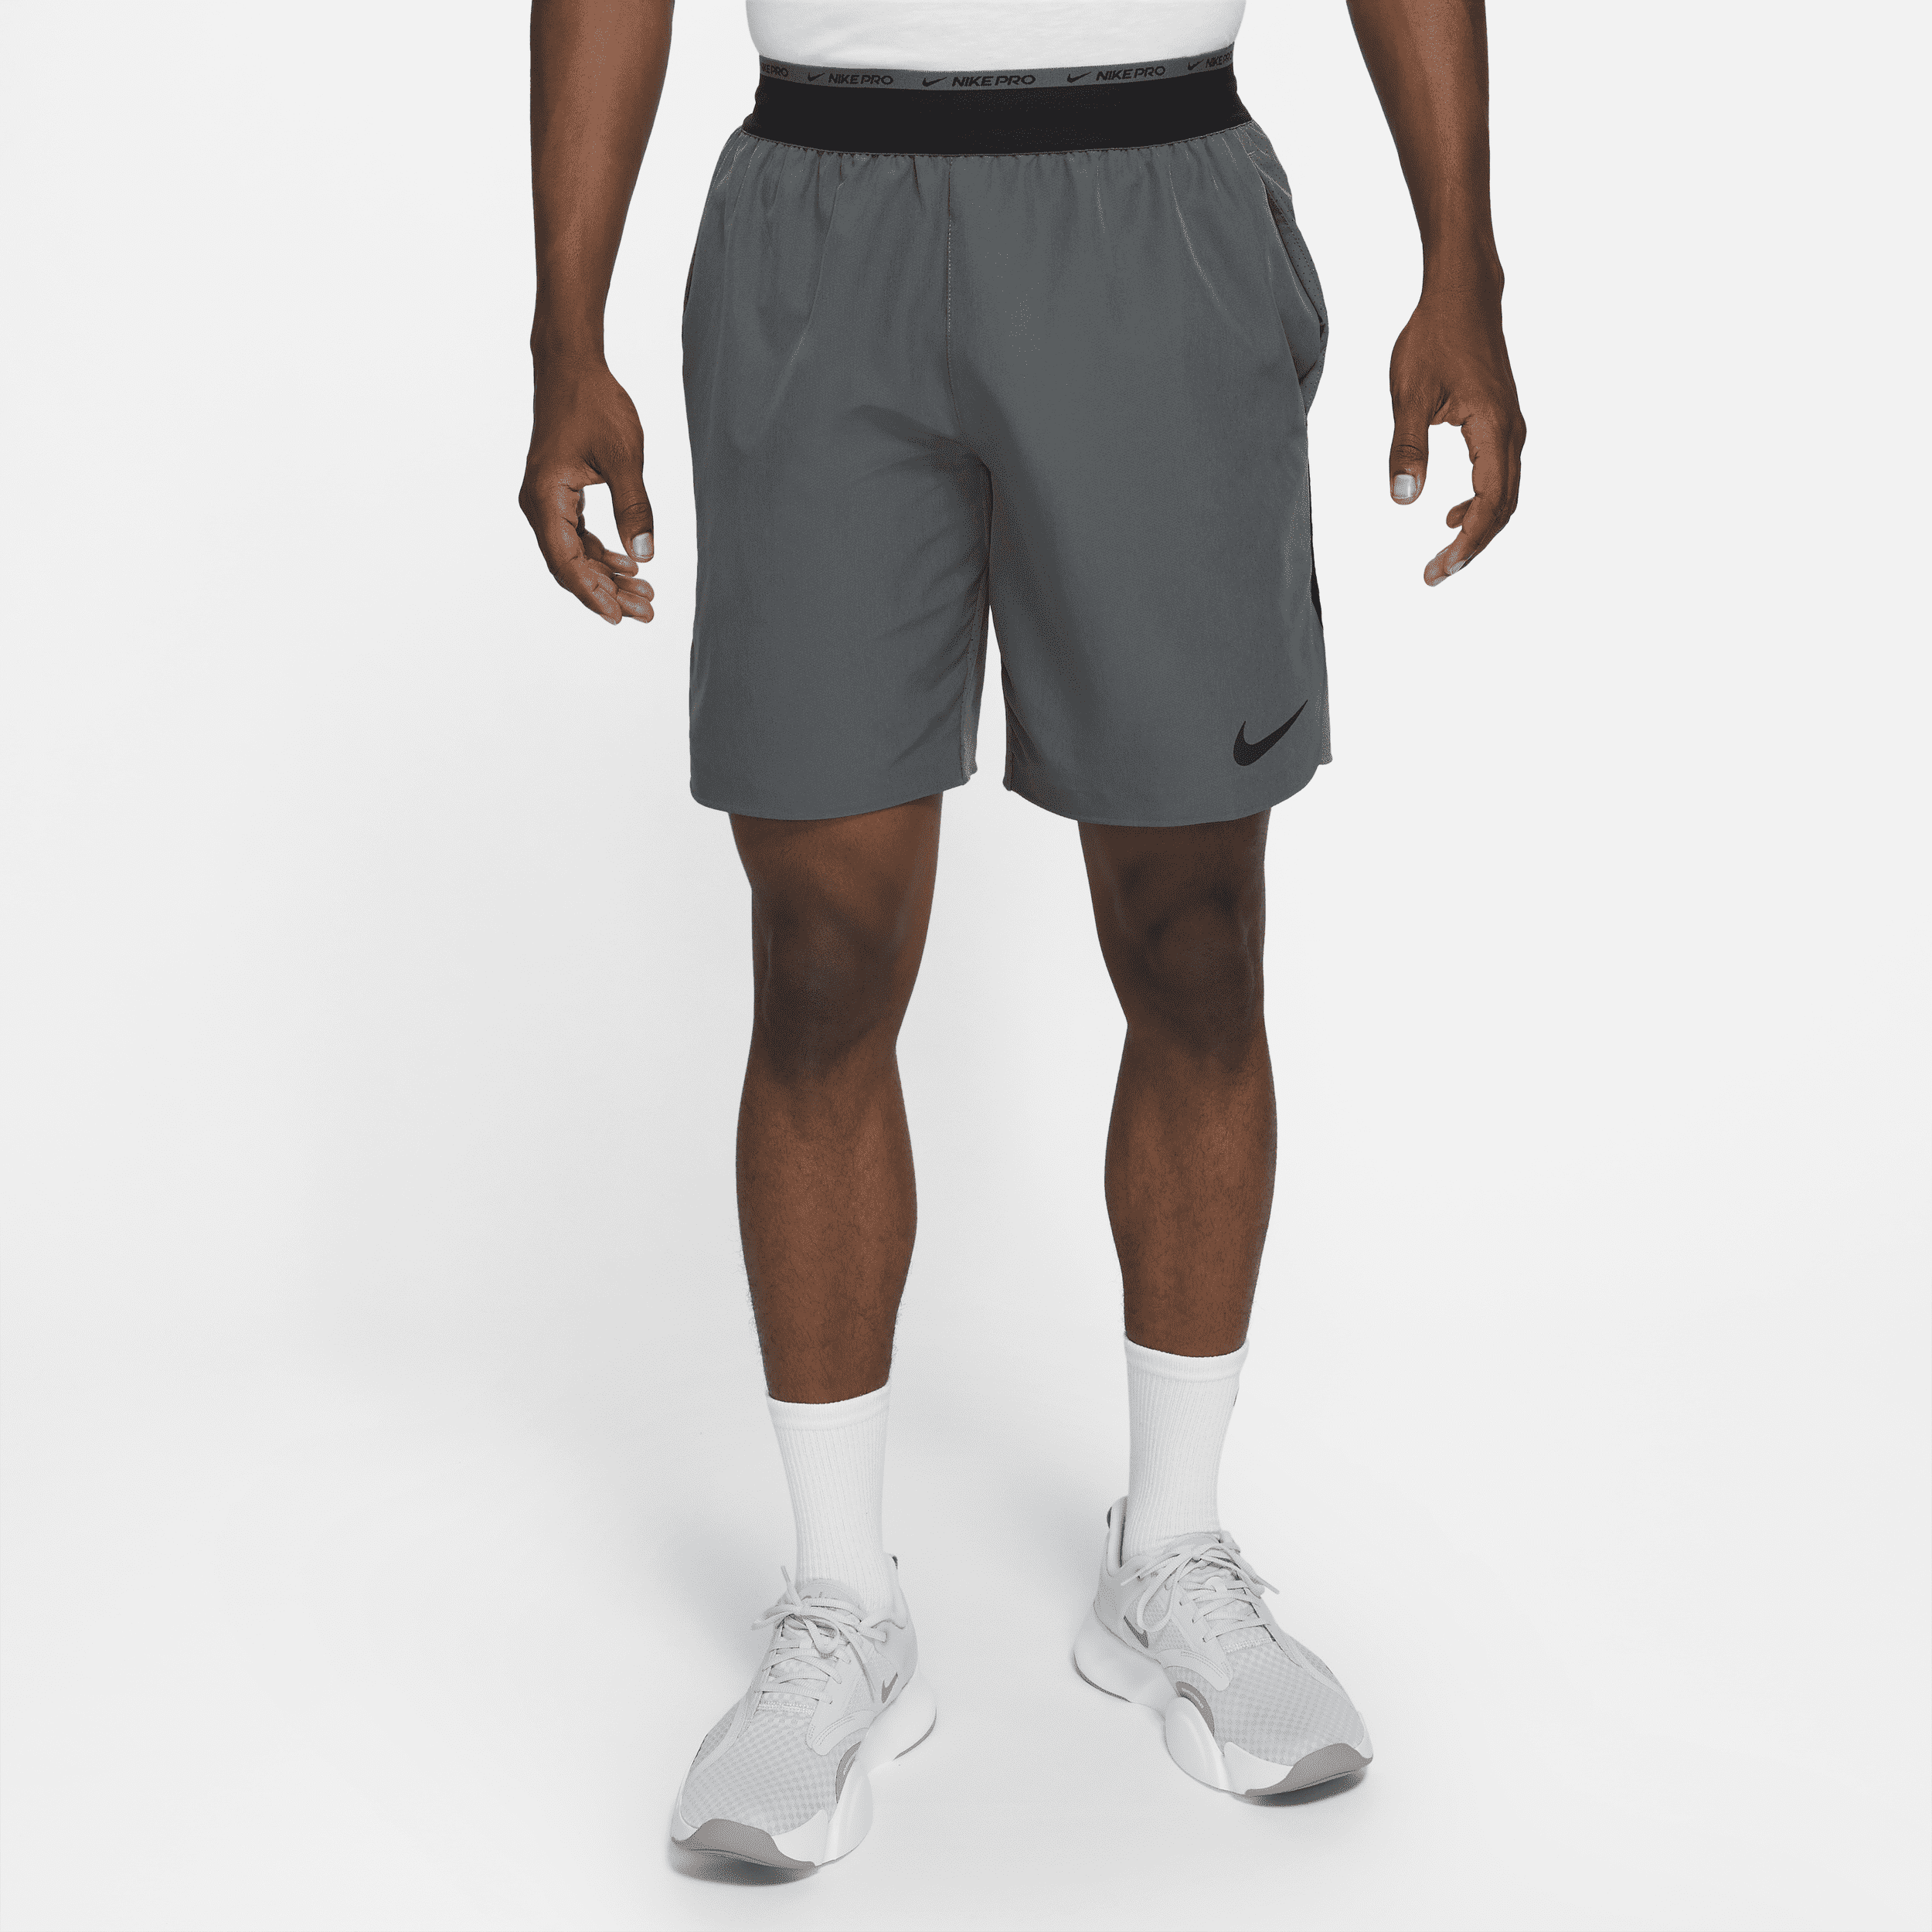 Shorts da training non foderati 20 cm Nike Dri-FIT Flex Rep Pro Collection – Uomo - Grigio